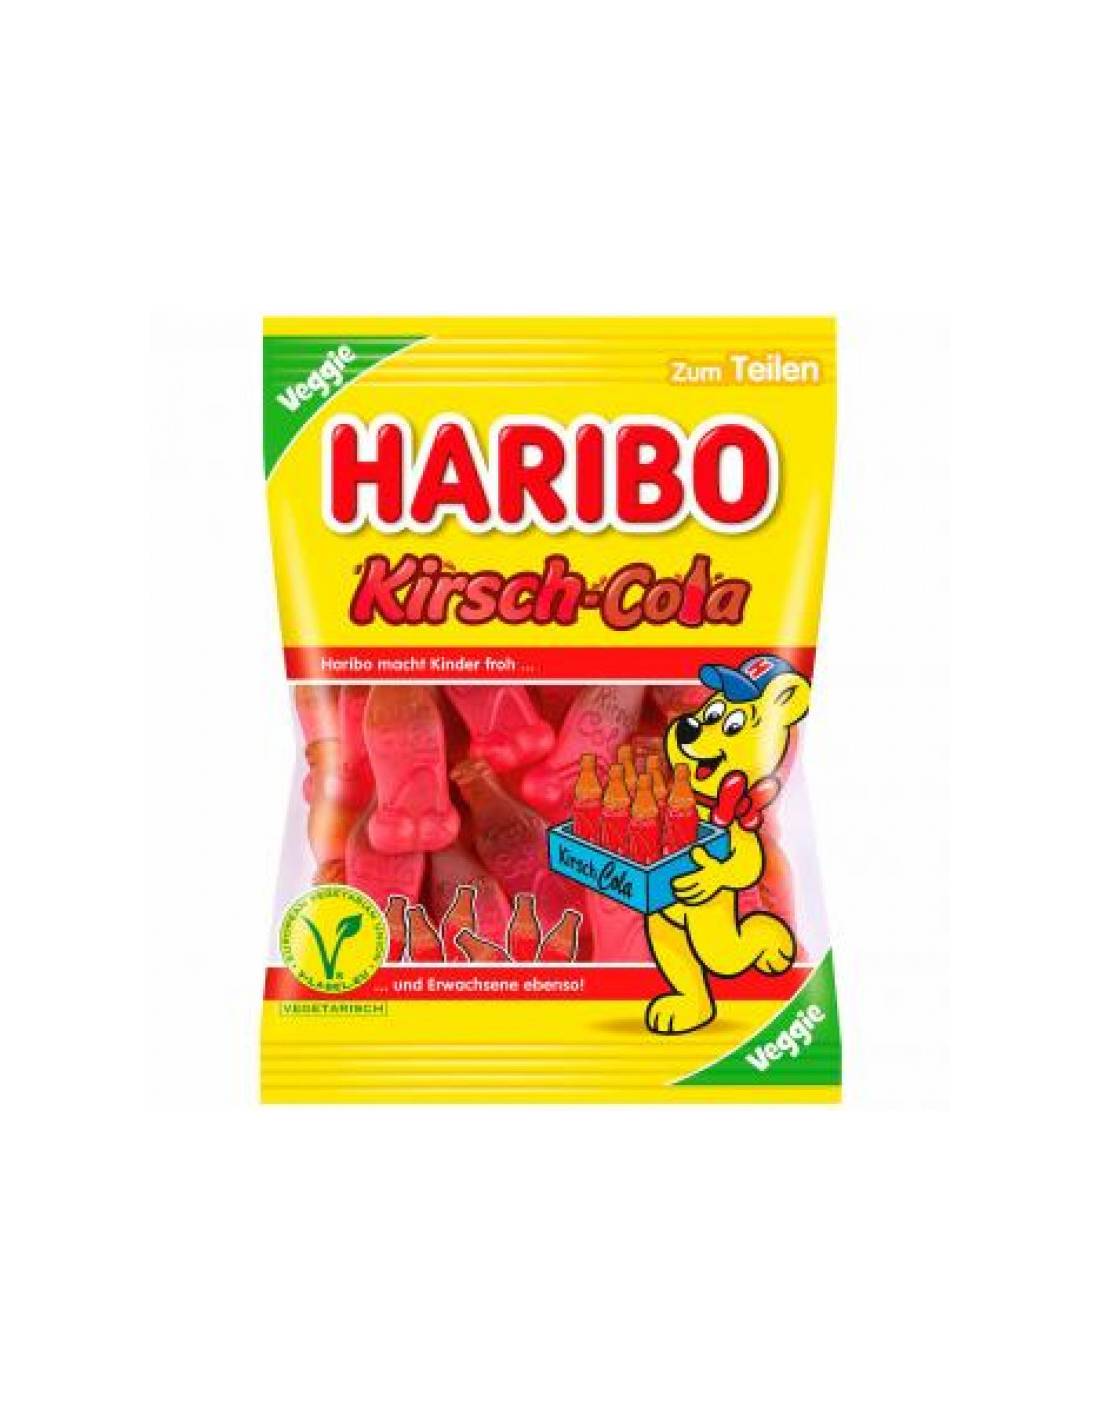 Haribo Kirsch-Cola Veggie jelly candies 175g